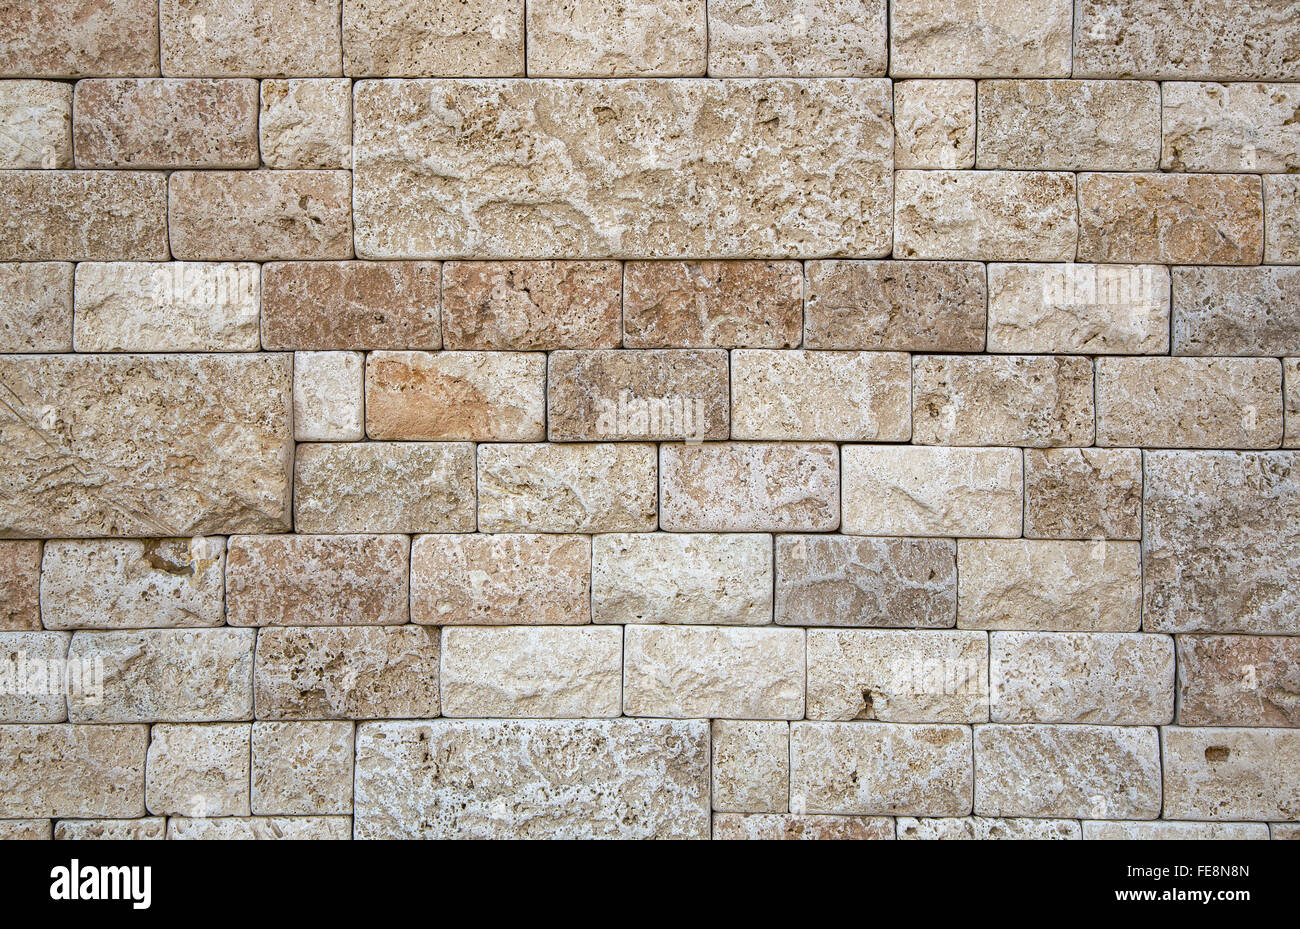 Une partie du mur de pierre naturelle beige structure poreuse. Rectangulaire en pierre de forme et taille différentes. Banque D'Images